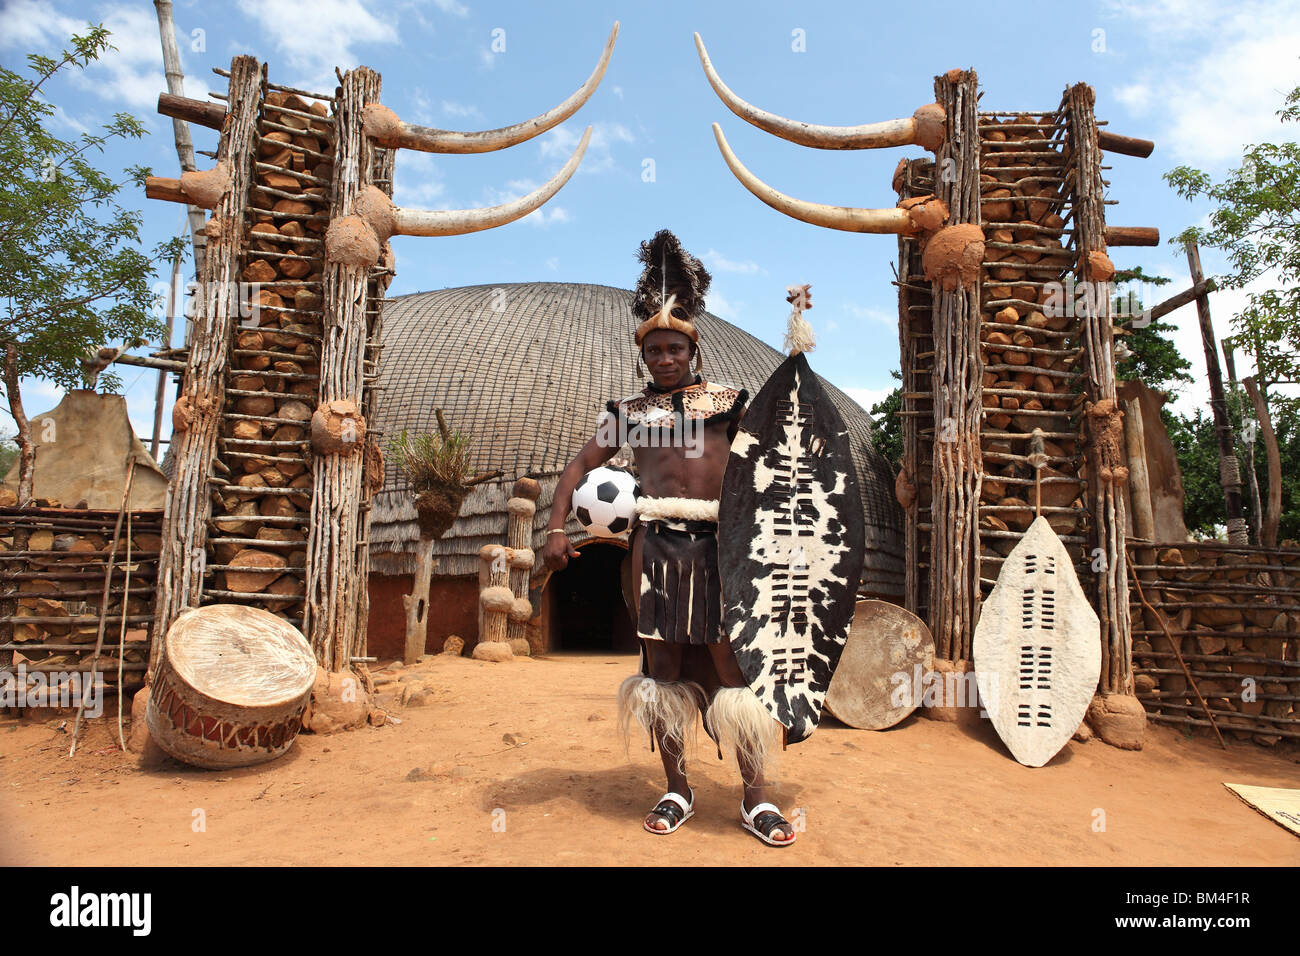 Un homme d'origine tribale zoulou porte des vêtements traditionnels tout en pose avec un ballon de soccer dans un village traditionnel en Afrique du Sud Banque D'Images